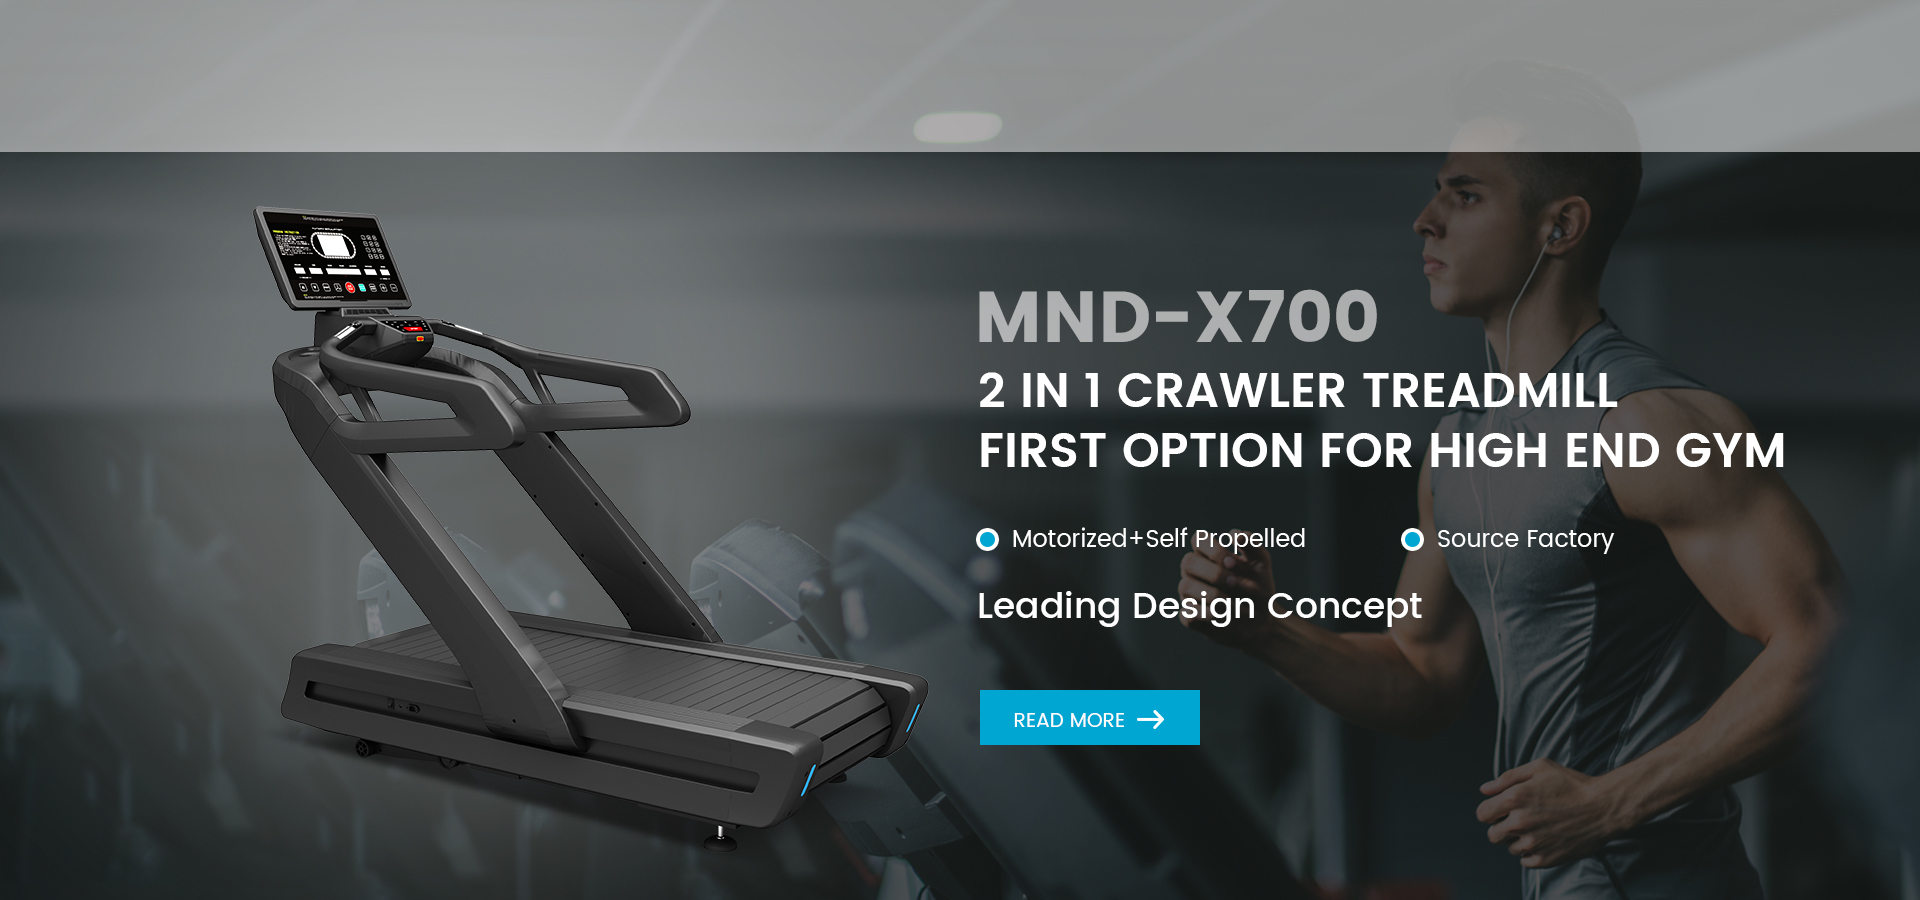 MND-X700 2 IN 1 Treadmill azụmahịa